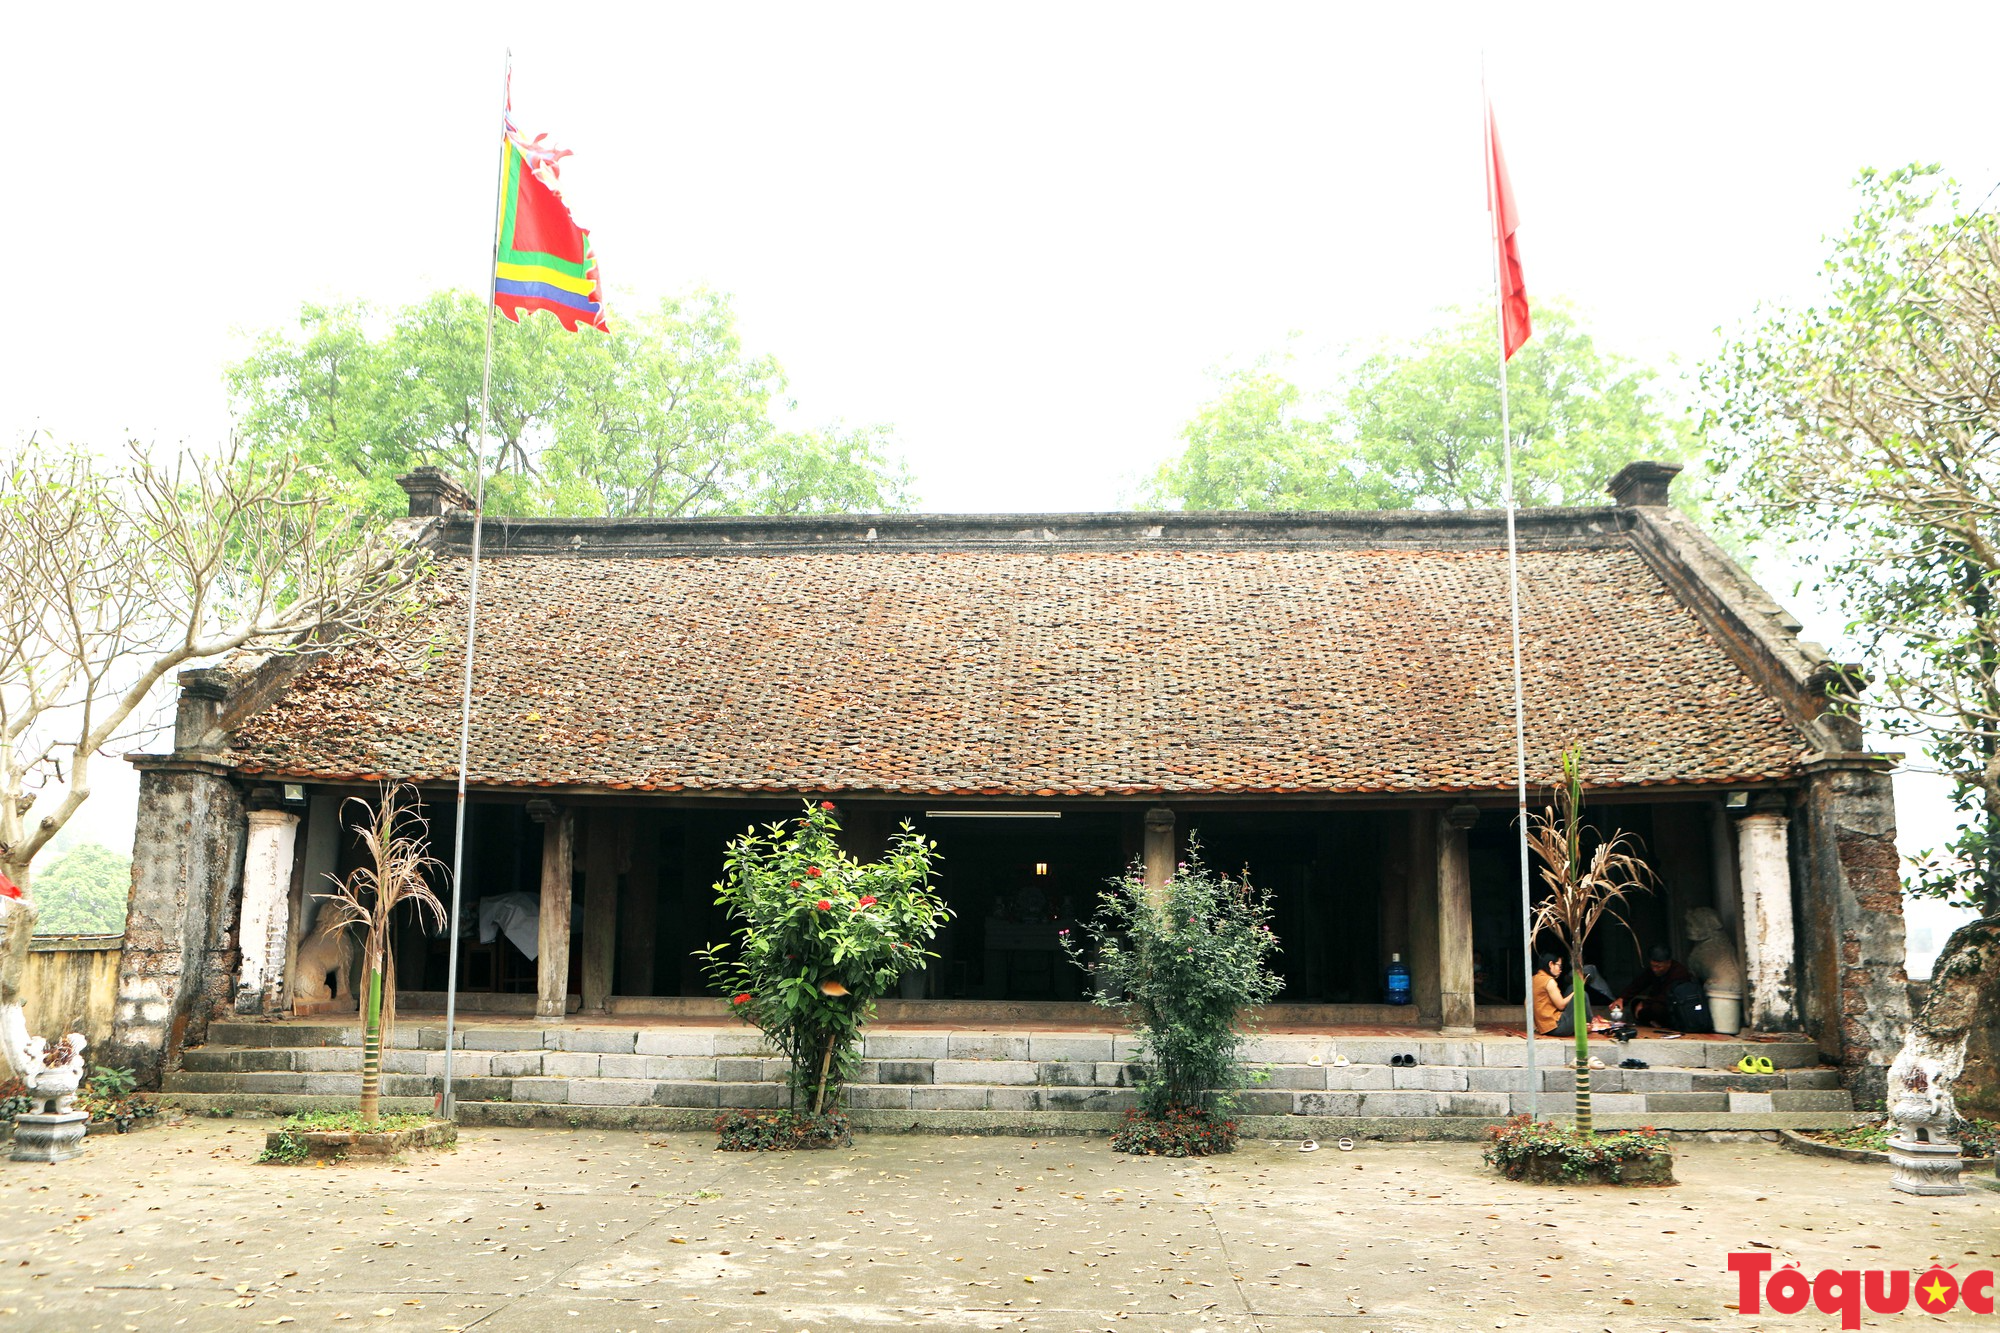 Đền đá Phú Đa kiến trúc độc đáo, đậm chất văn hóa Việt cổ - Ảnh 2.